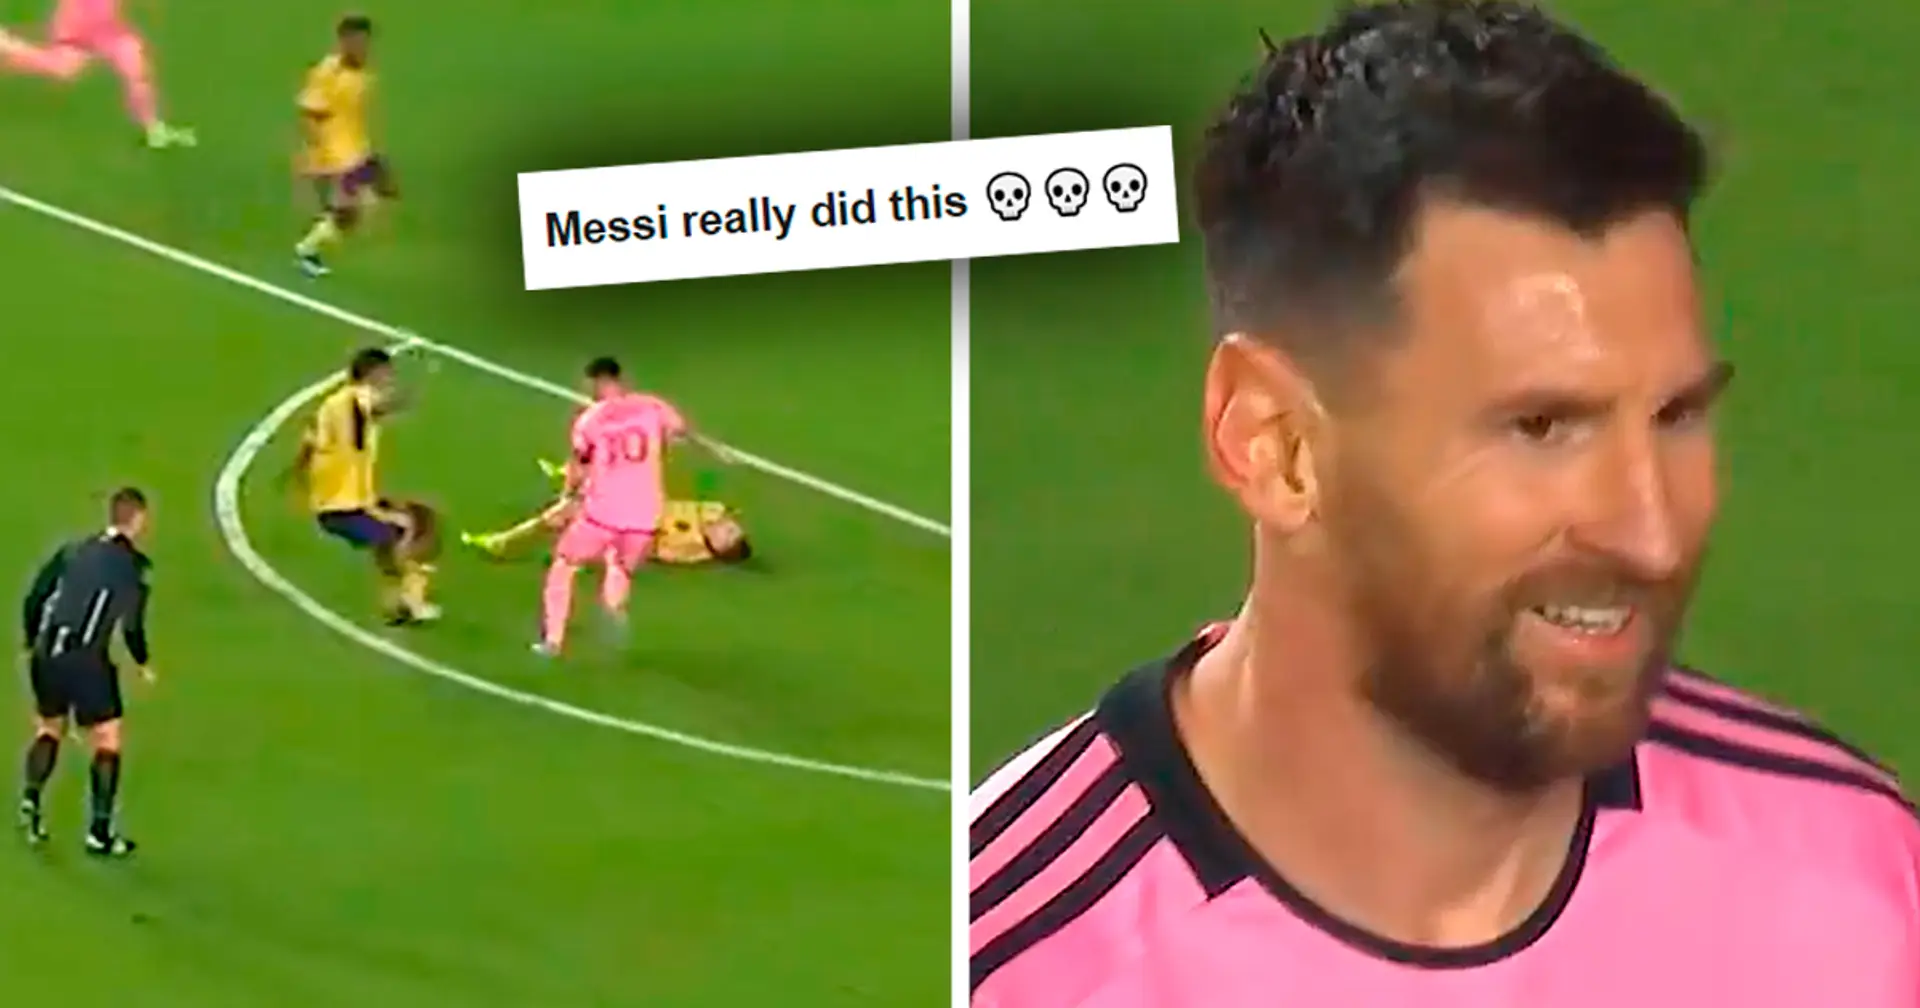 Gesichtet: Messi chippt einen Spieler, der verletzt am Boden liegt - Video geht viral